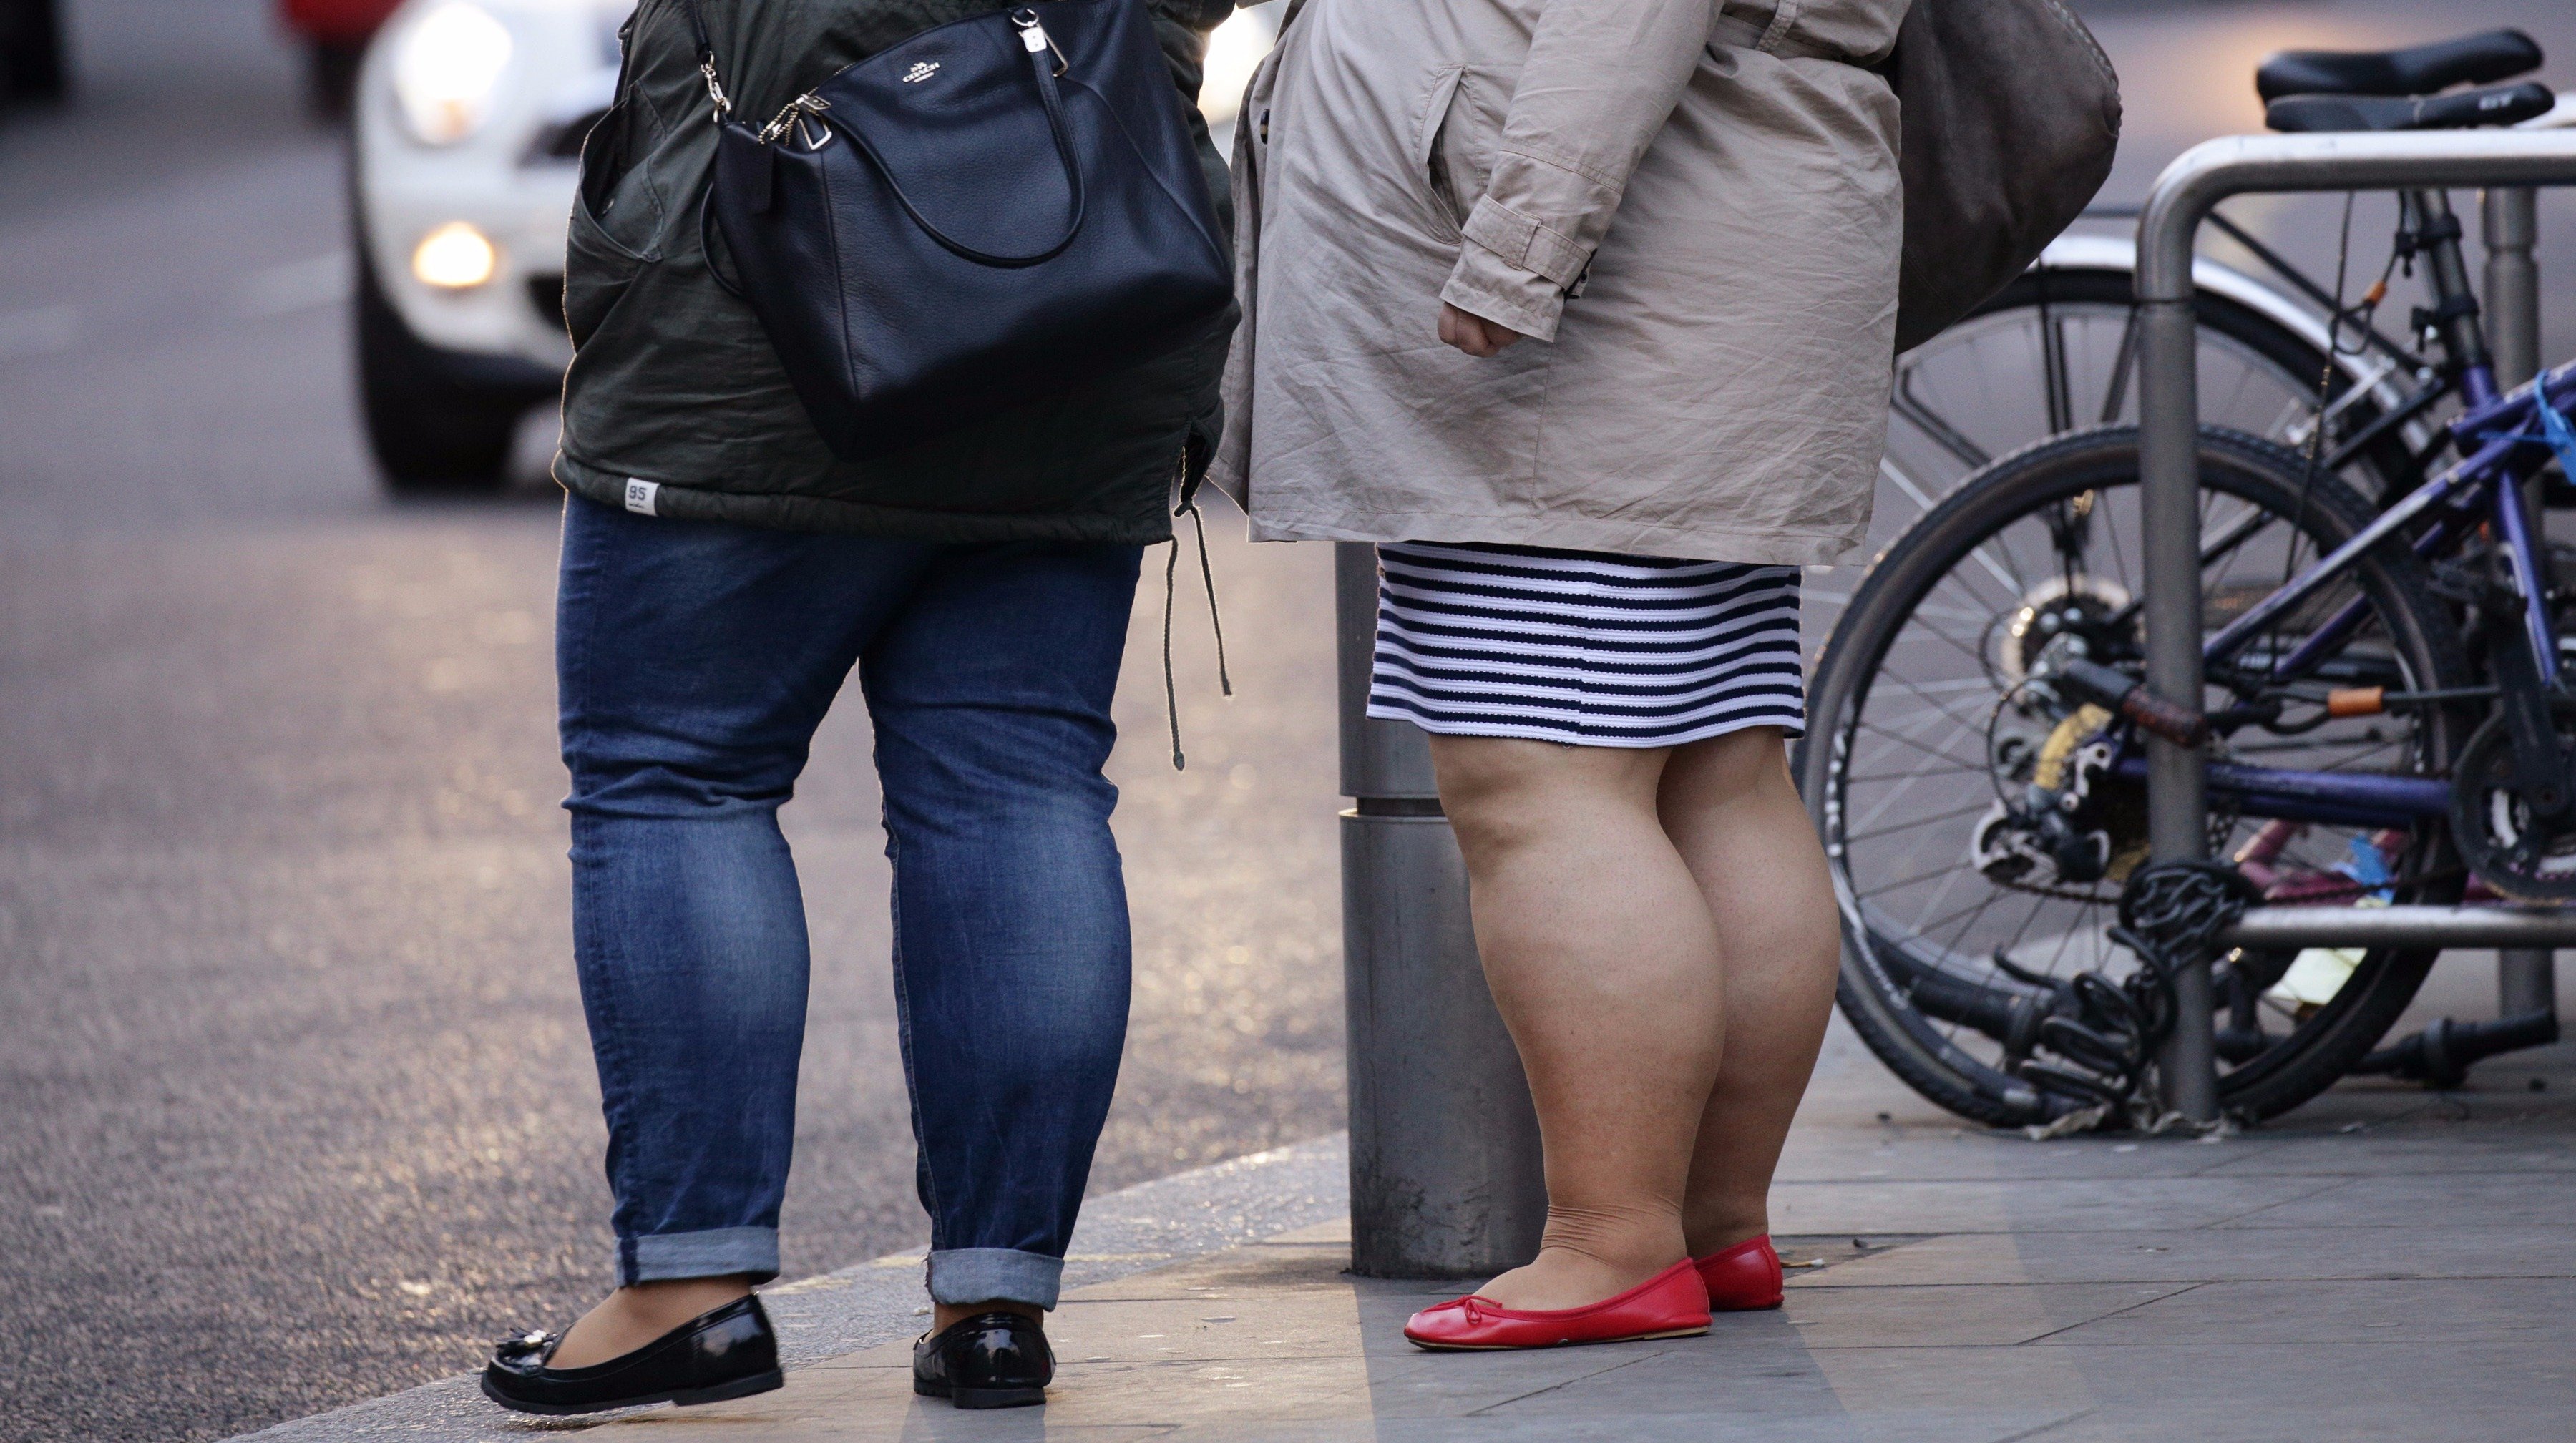 Ноги у толстых людей. Жирные люди на улице. Люди с лишним весом на улице.